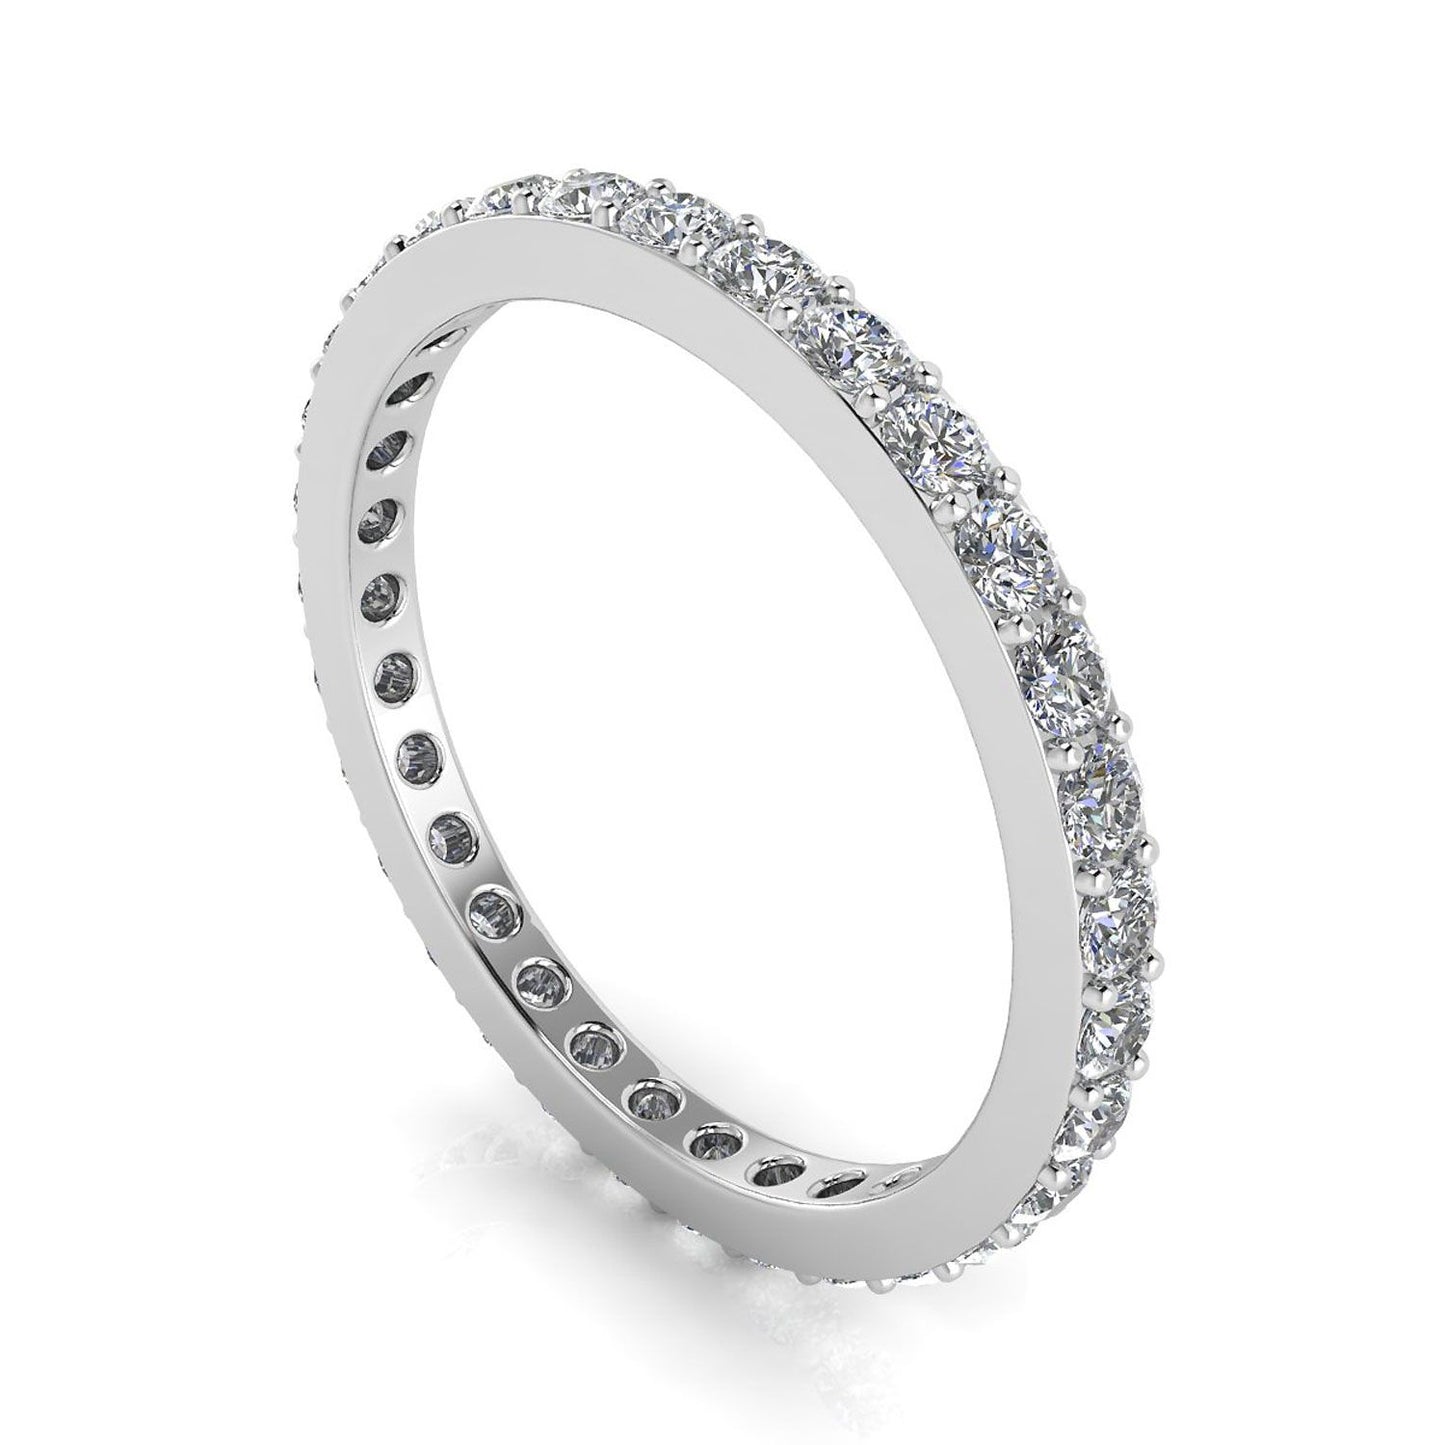 แหวนไพลินเจียระไนเพชรกลมตั้ง Eternity Ring ทองคำขาว 18k (1.37 กะรัต Tw.) ขนาดแหวน 4.5